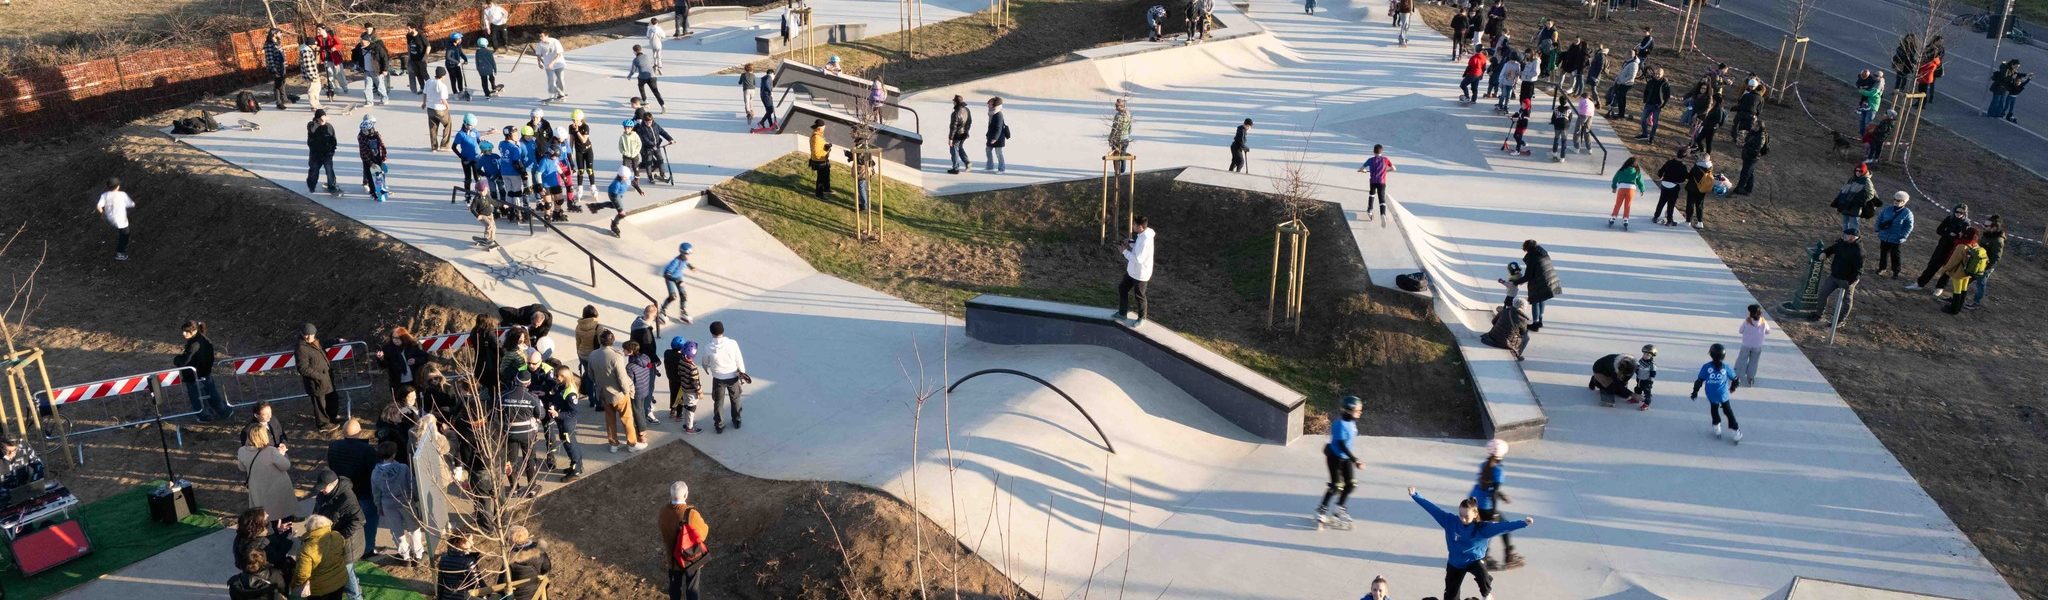 Inaugurazione skatepark: vista dall'alto